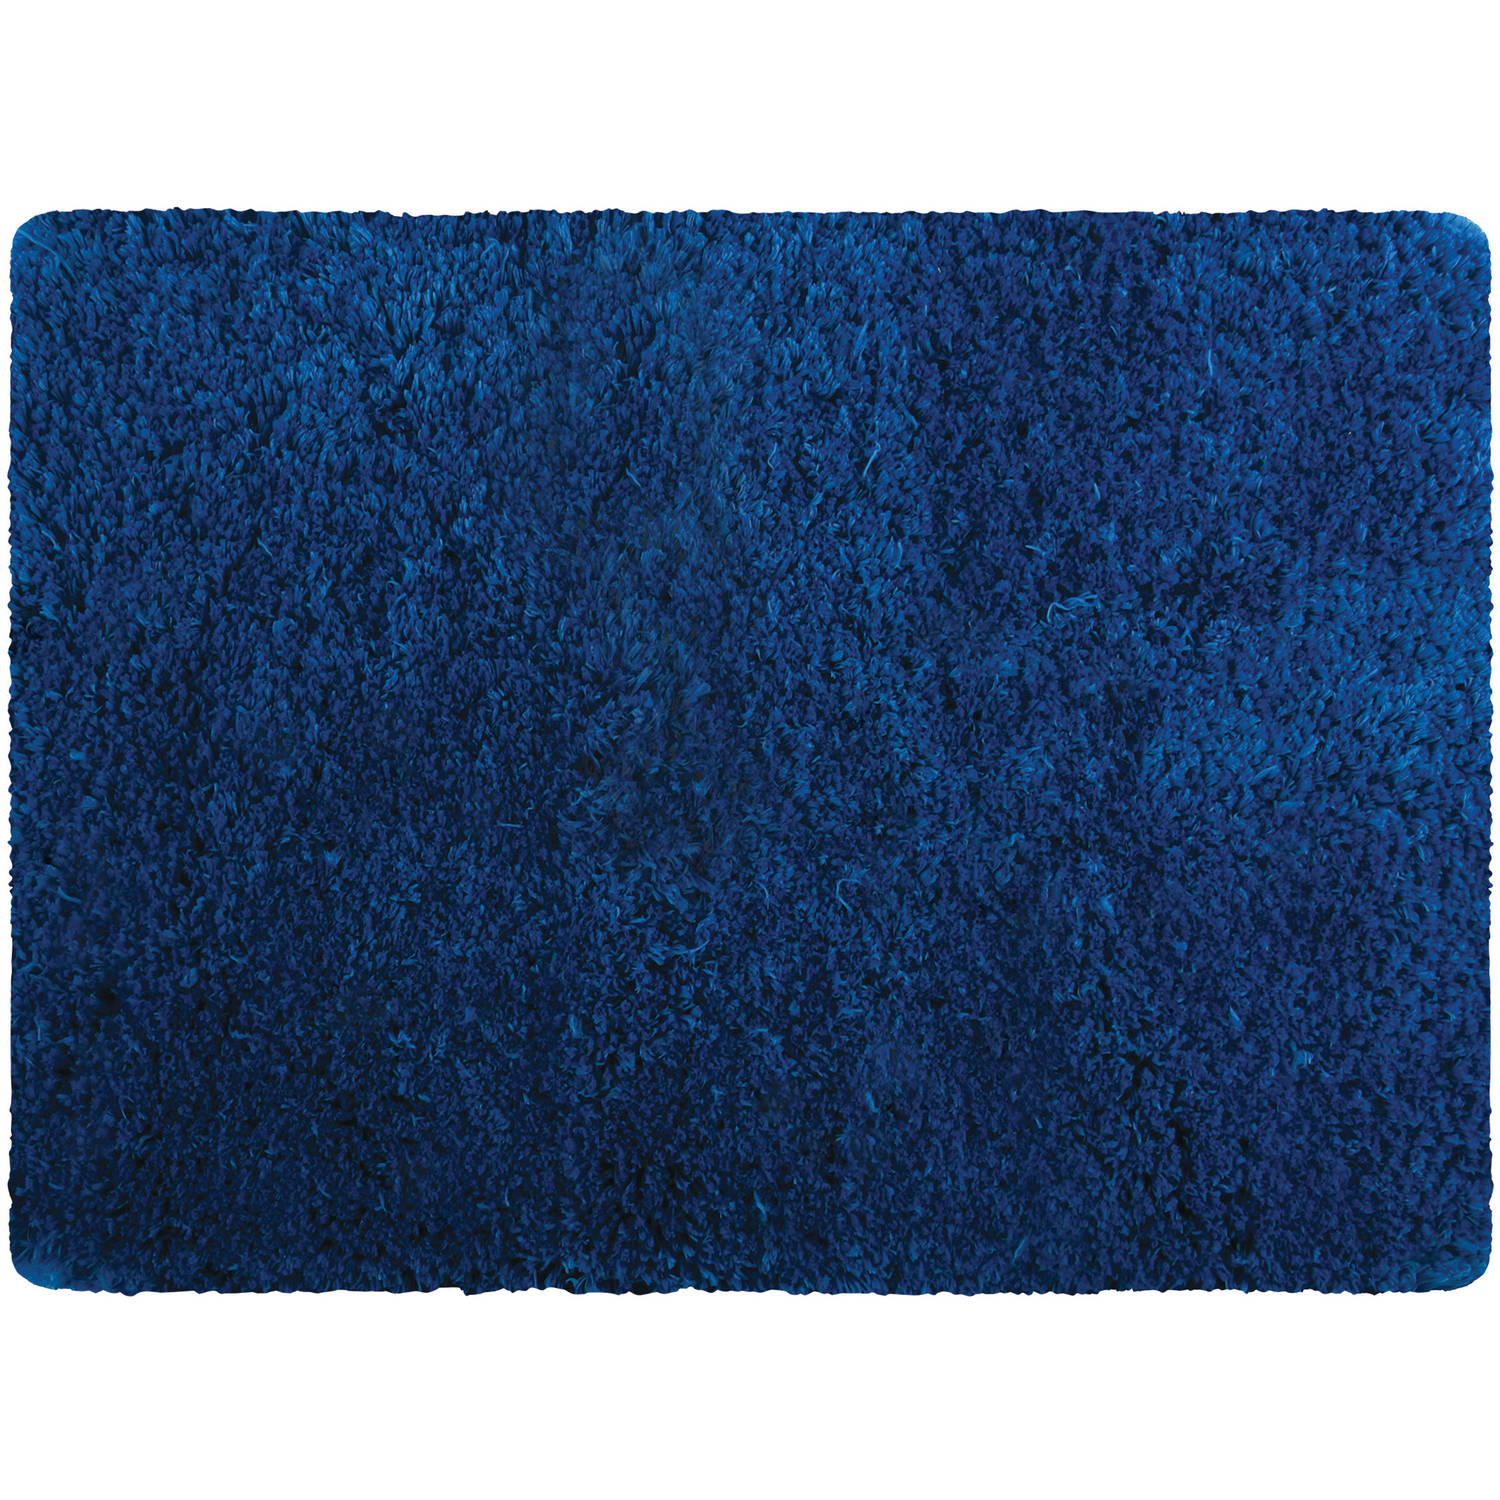 MSV Badkamerkleedje/badmat tapijt - voor de vloer - marine blauw - 50 x 70 cm - Microfibre - langharig